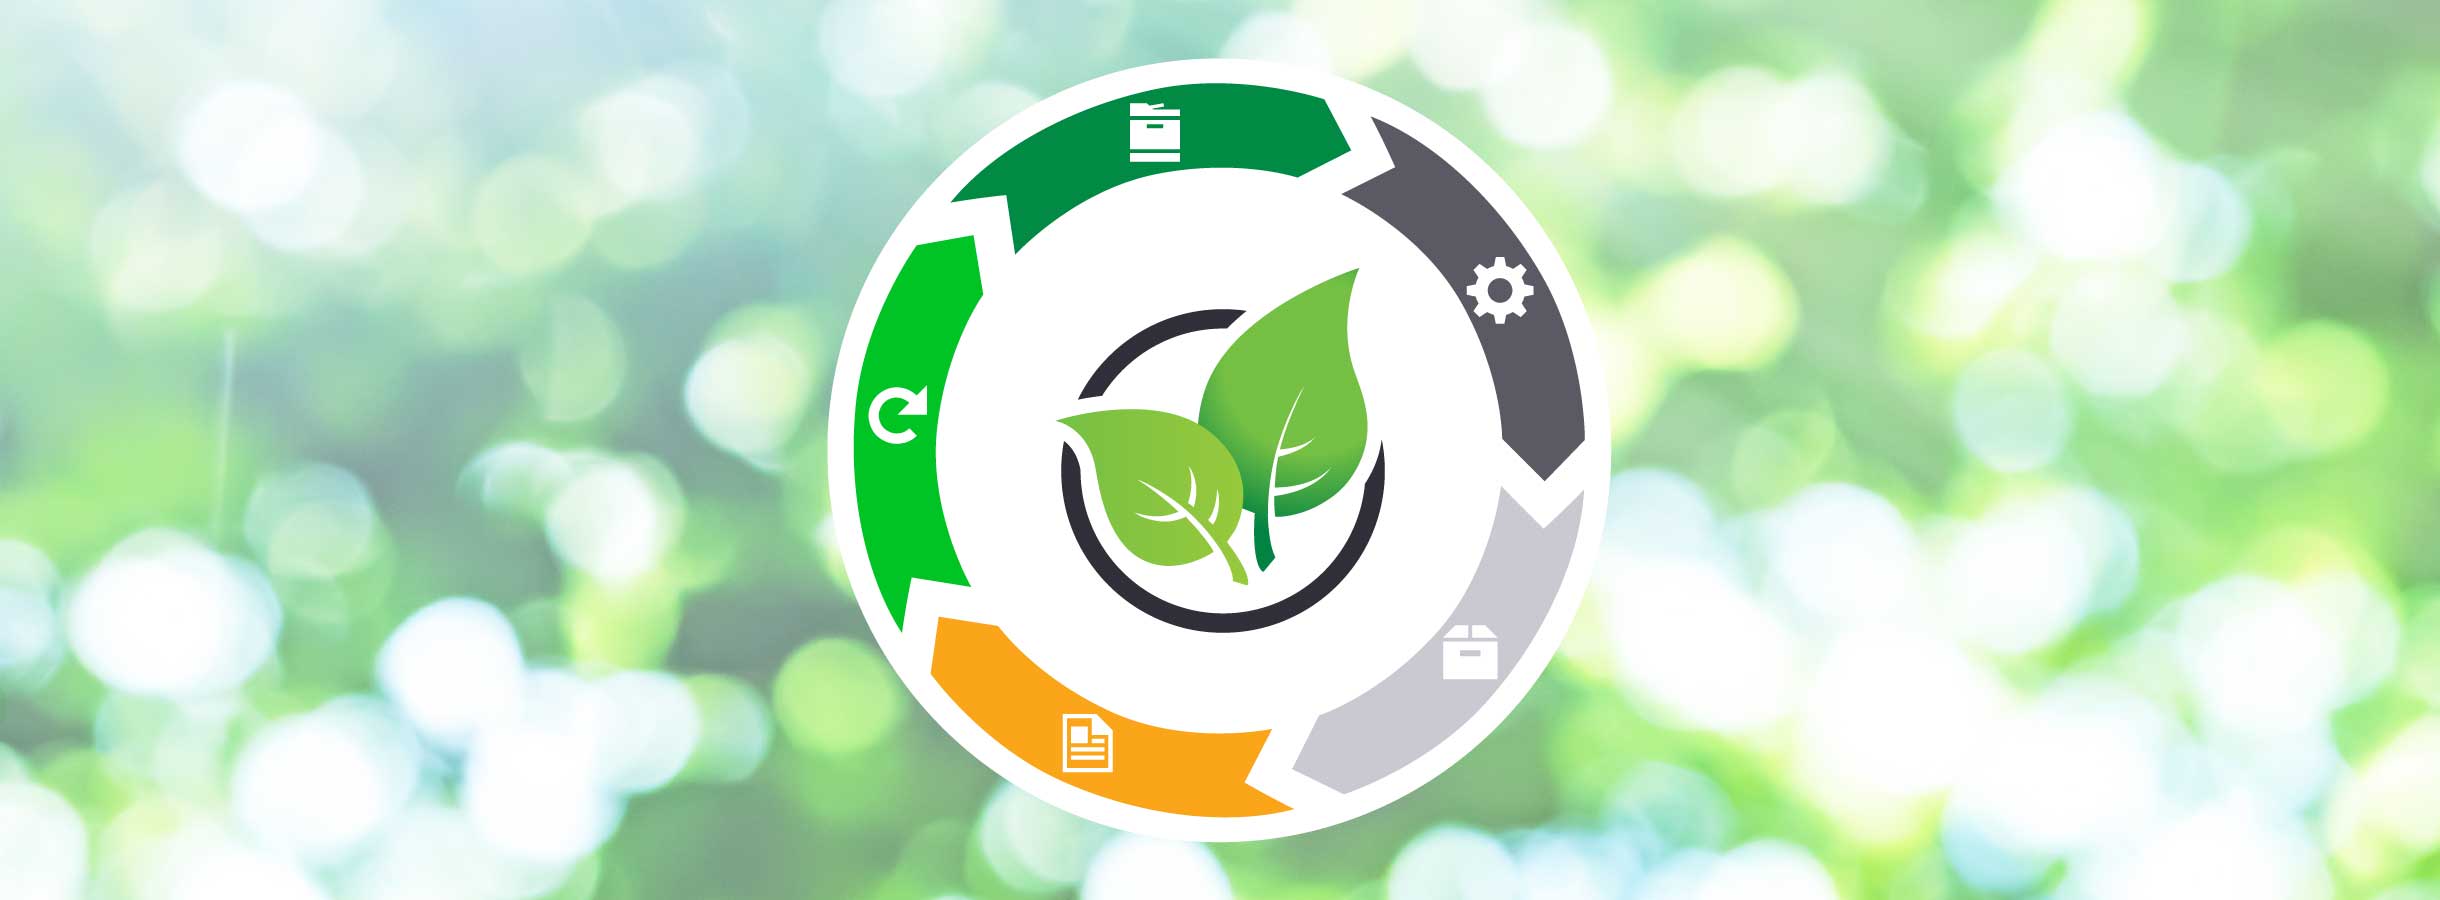 Ilustração do design circular dos consumíveis sustentáveis da Lexmark.